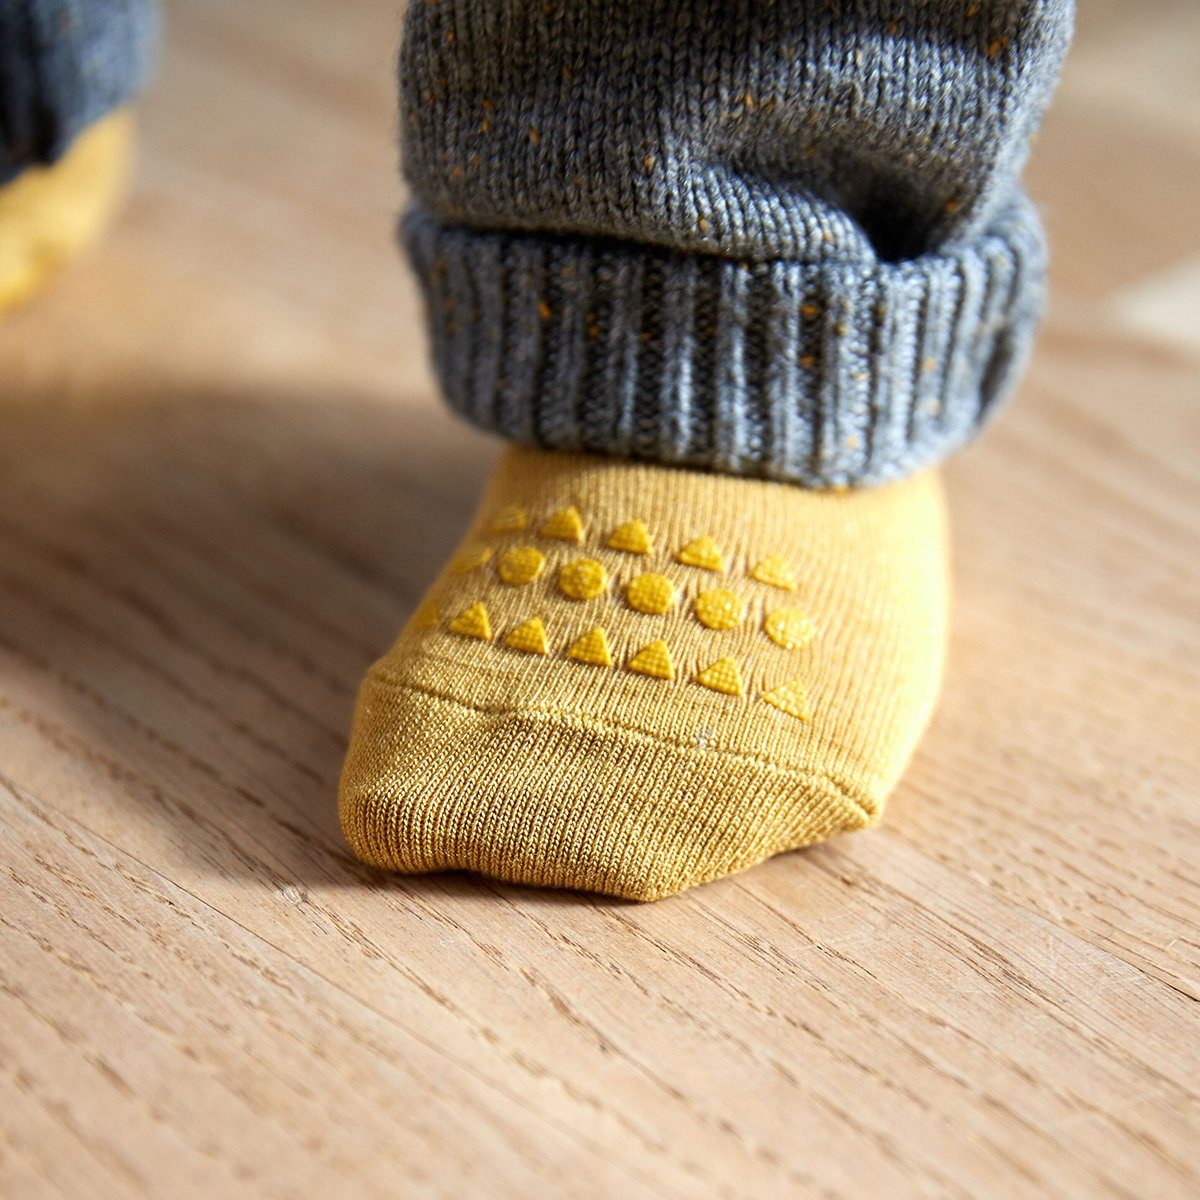 GoBabyGo ABS-Socken Kinder Stoppersocken antirutsch Krabbel Gummi (Mustard Rutschfeste Senfgelb) mit Strümpfe Noppen Baby Socken Kleinkinder - 